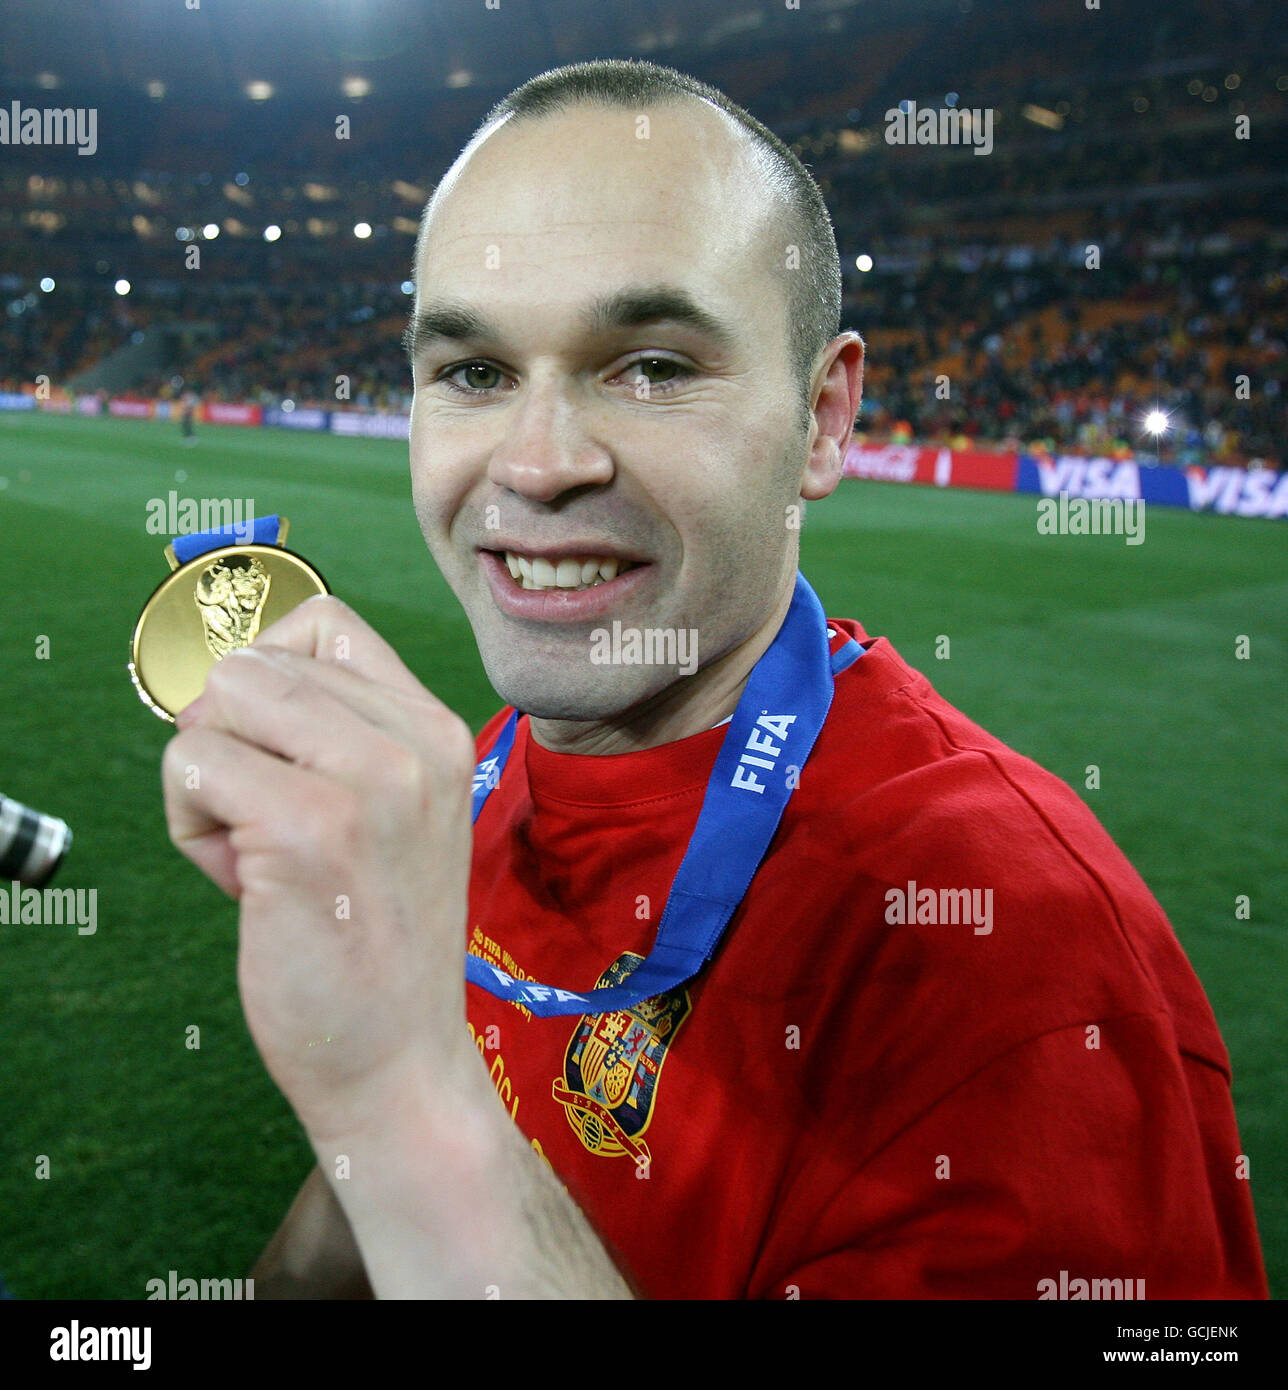 Andres Iniesta d'Espagne célèbre avec sa médaille des vainqueurs de la coupe  du monde Après avoir gagné contre les pays-Bas Photo Stock - Alamy